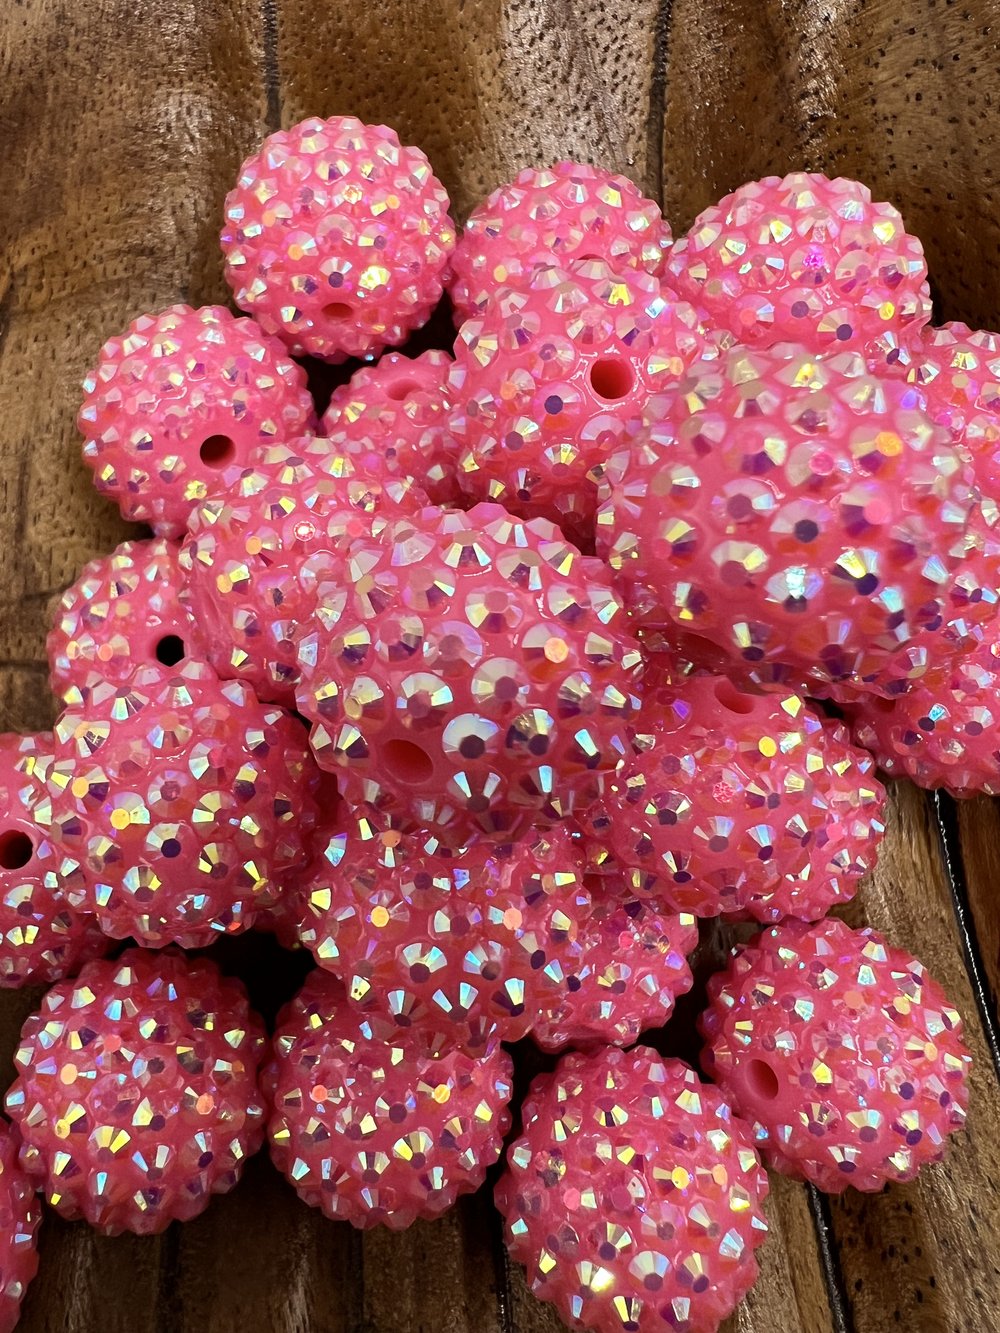 20mm Rainbow Confetti AB Rhinestone Bubblegum Beads